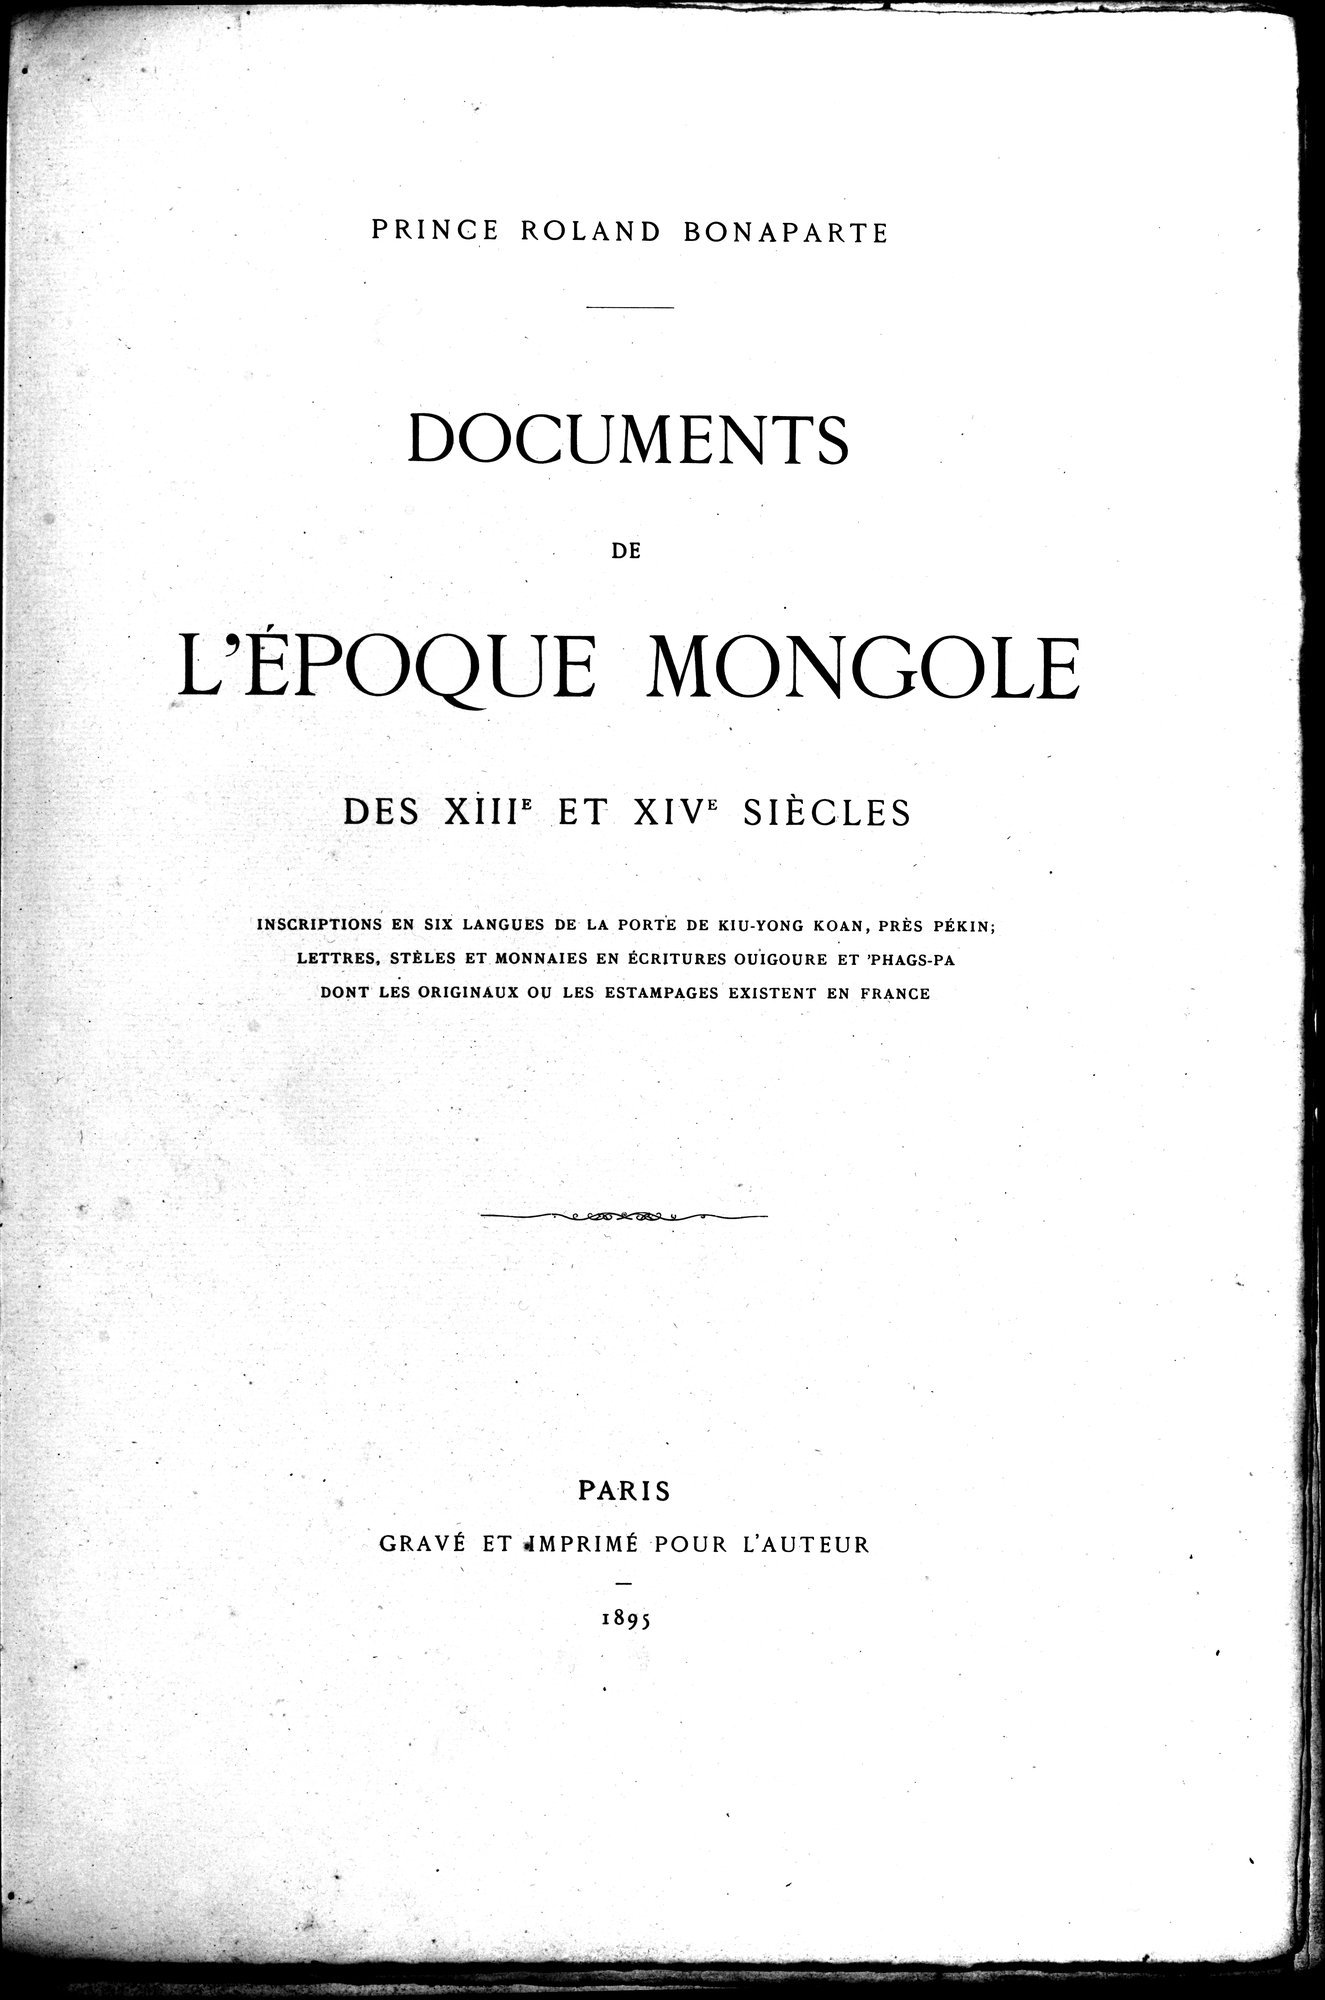 Documente de l'Époque Mongole des XIIIe et XIVe Siècle : vol.1 / Page 5 (Grayscale High Resolution Image)